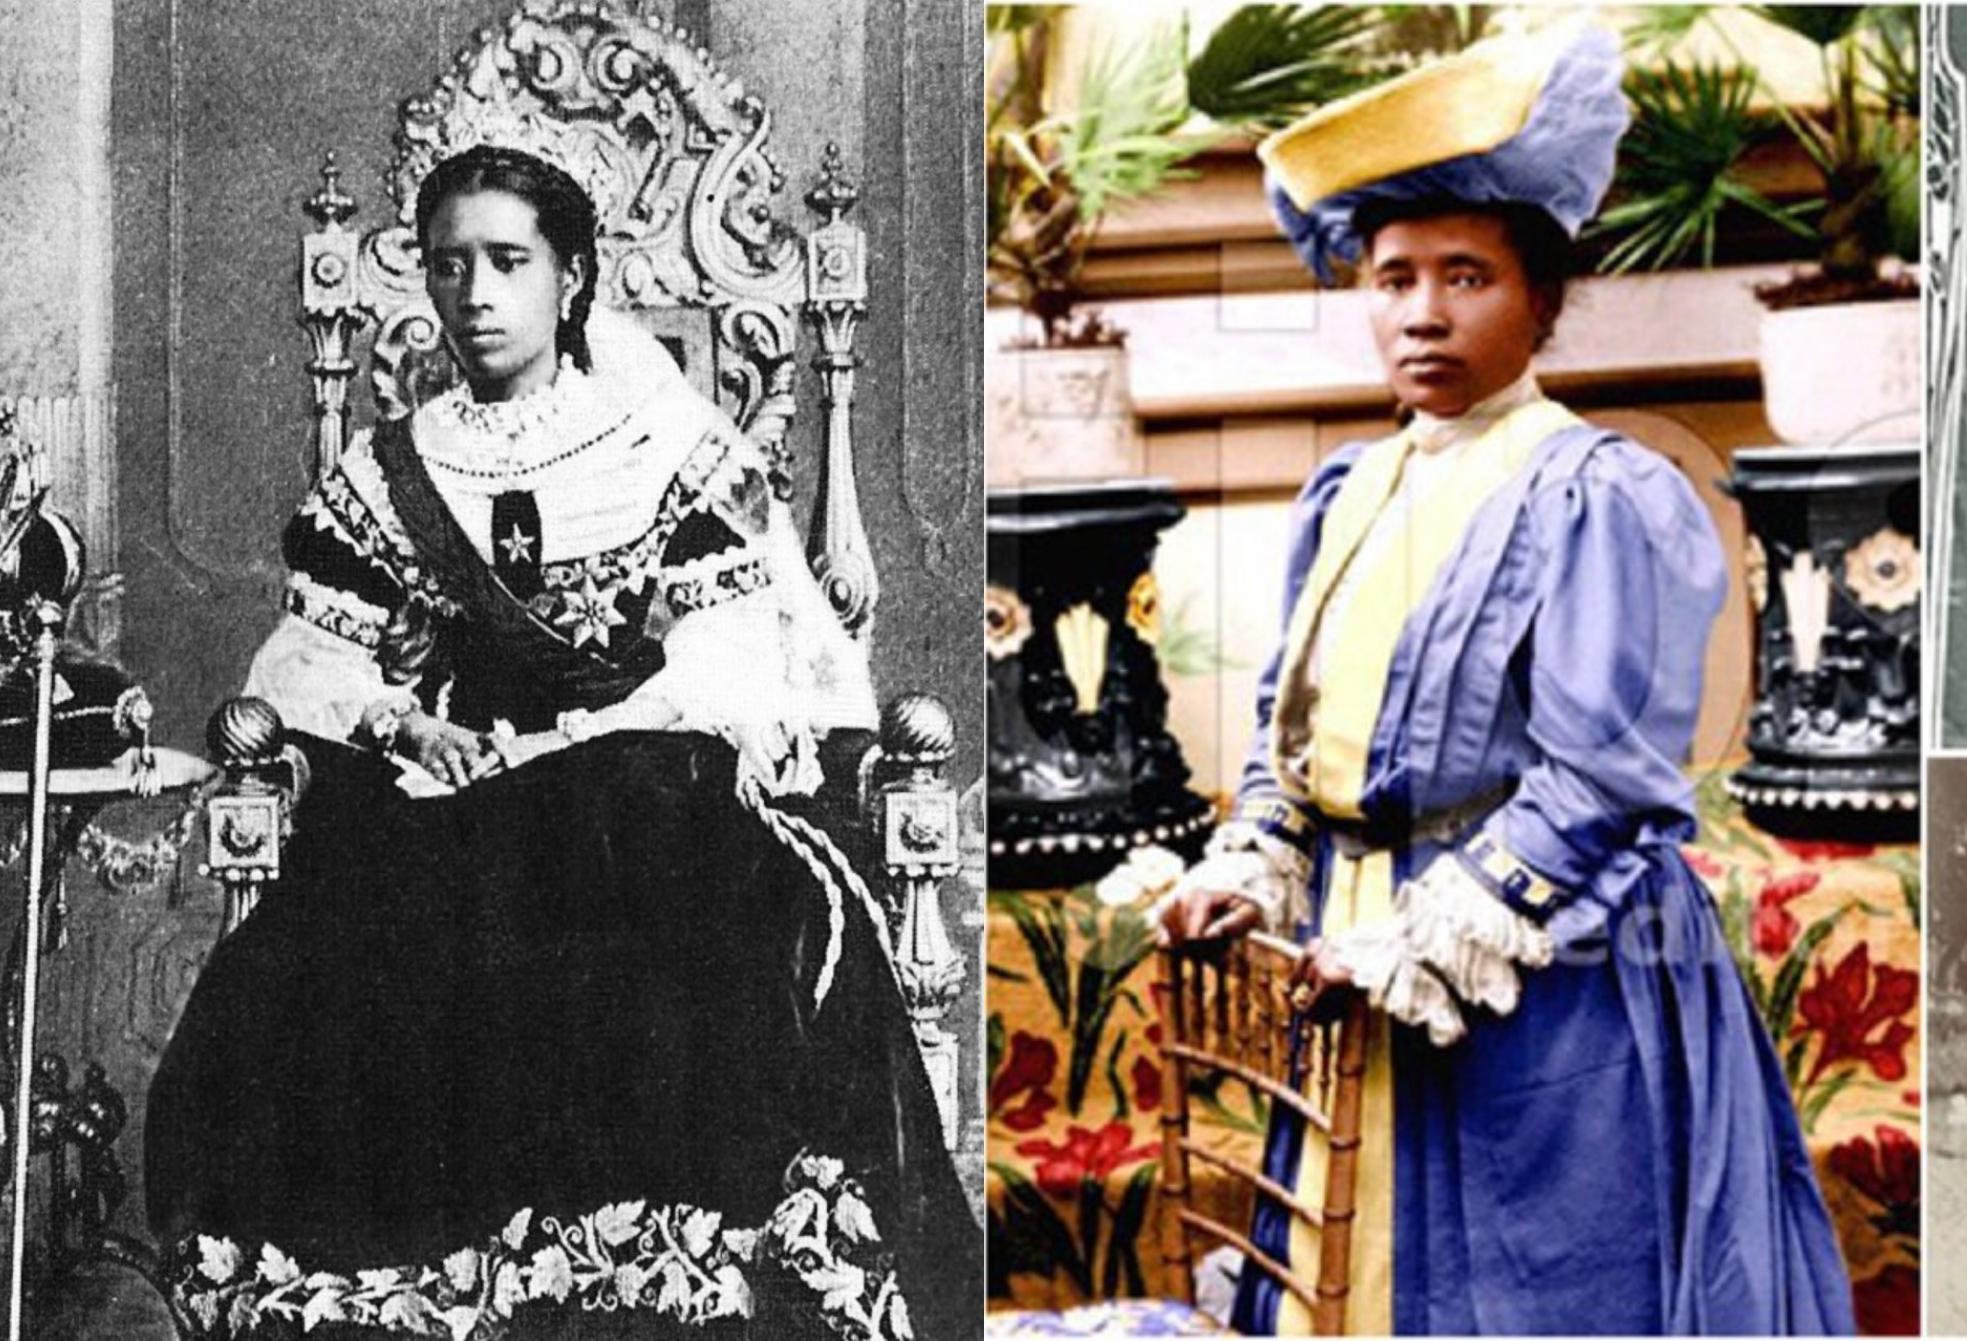 Η «Ματωμένη Βασίλισσα» της Μαδαγασκάρης: Ο Θηλυκός Καλιγούλας που σκότωσε τον μισό πληθυσμό της χώρας γιατί ήταν χριστιανοί